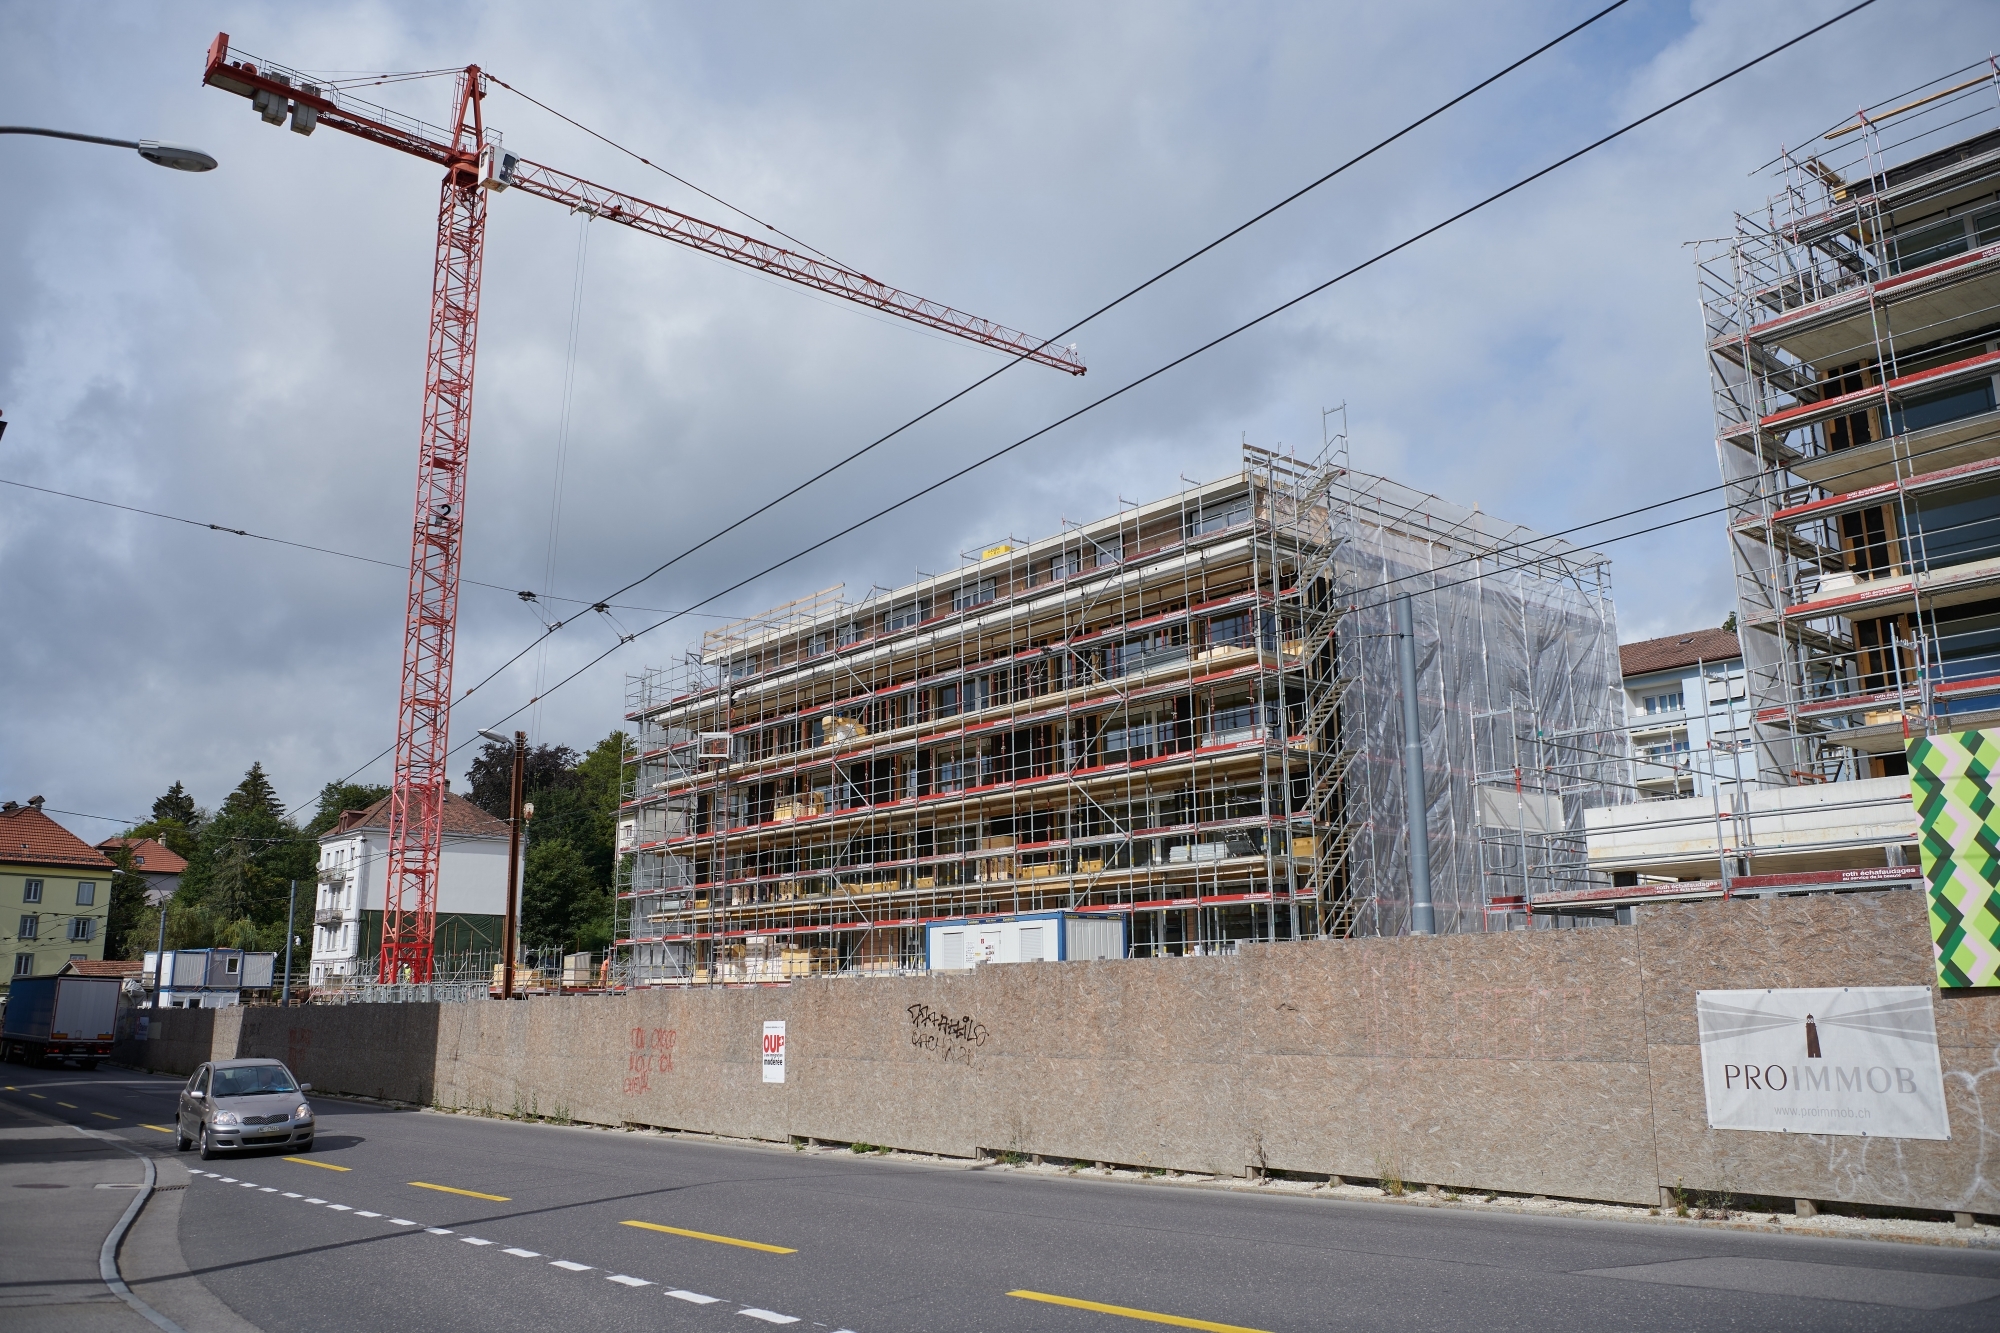 Plus de 900 nouveaux logements ont été construits au cours de l'année dernière dans le canton de Neuchâtel. Ici, un chantier chaux-de-fonnier.